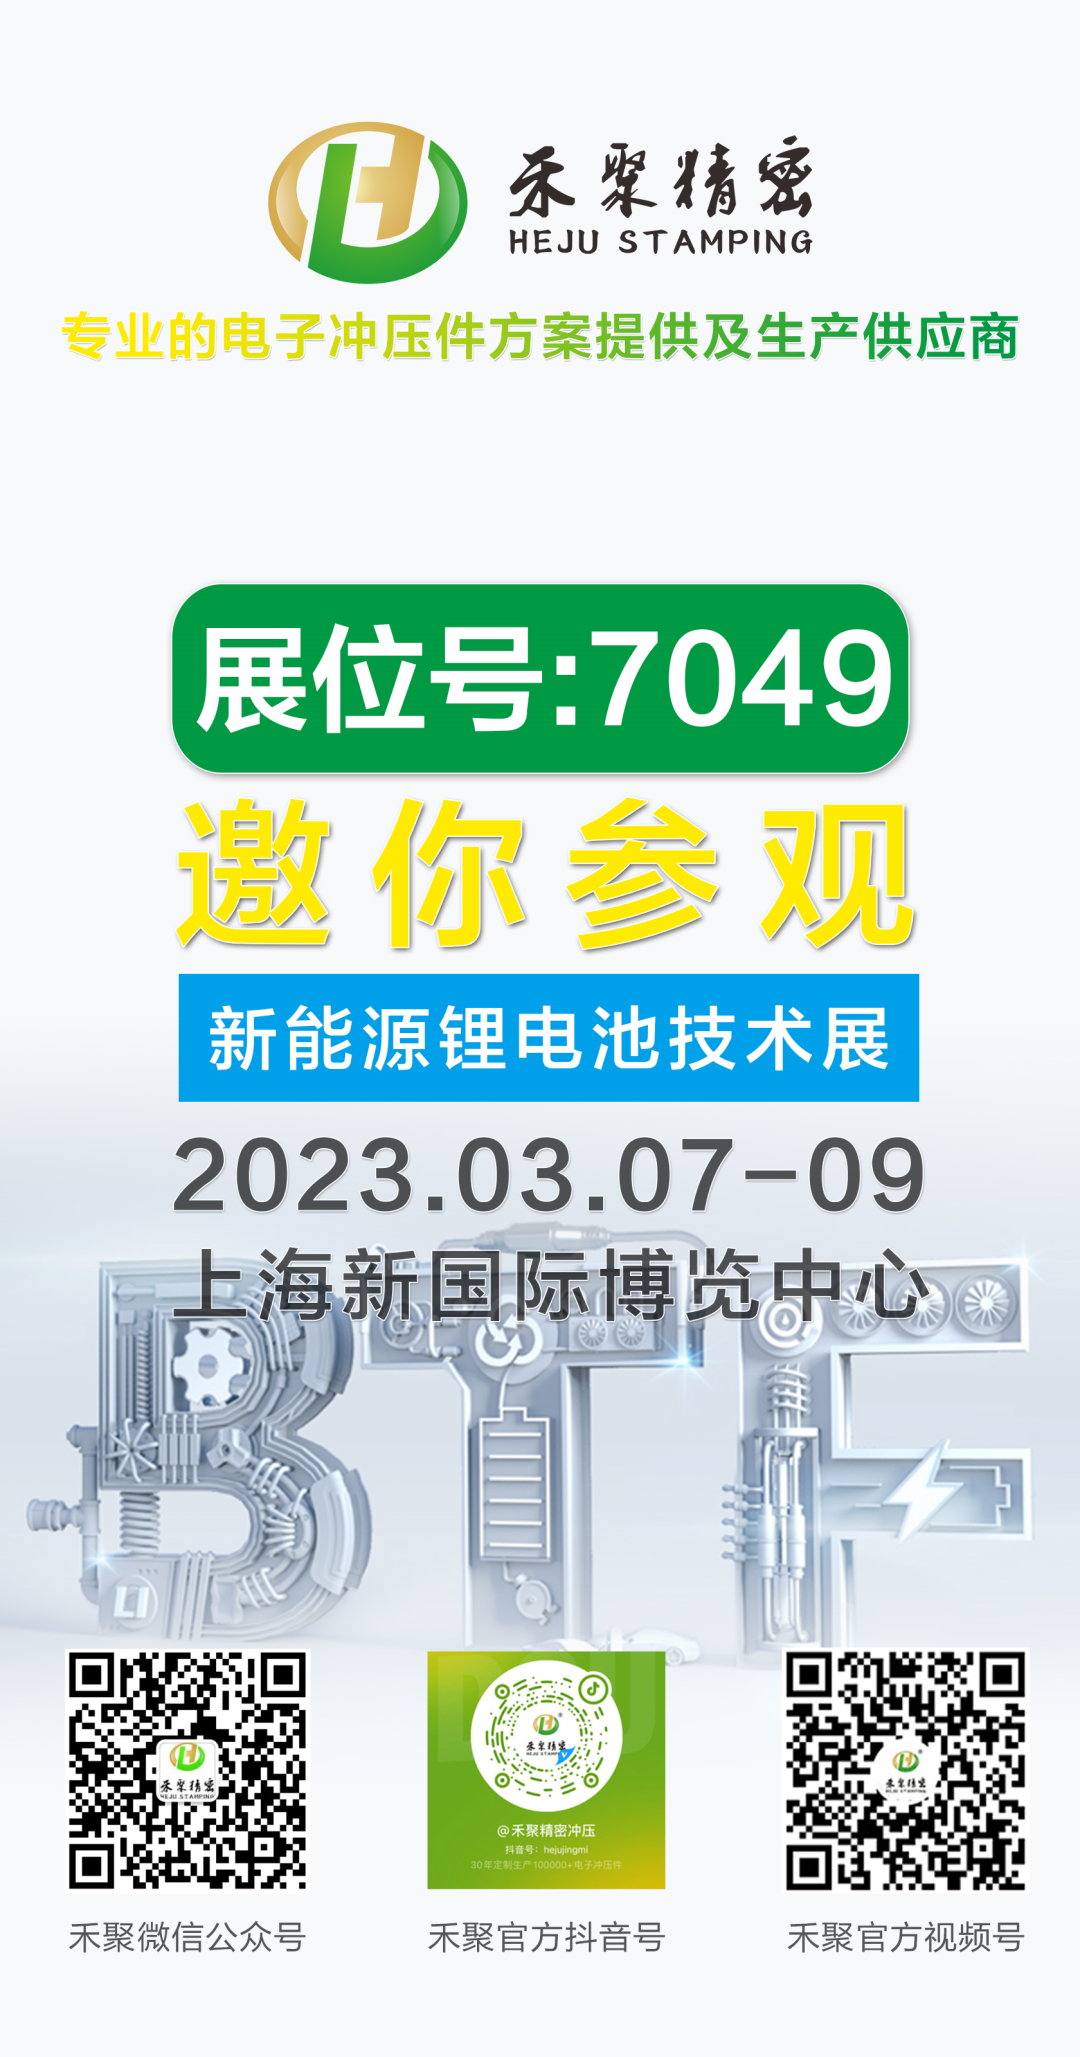 禾聚精密邀您参观丨BTF2023上海国际锂电池技术展